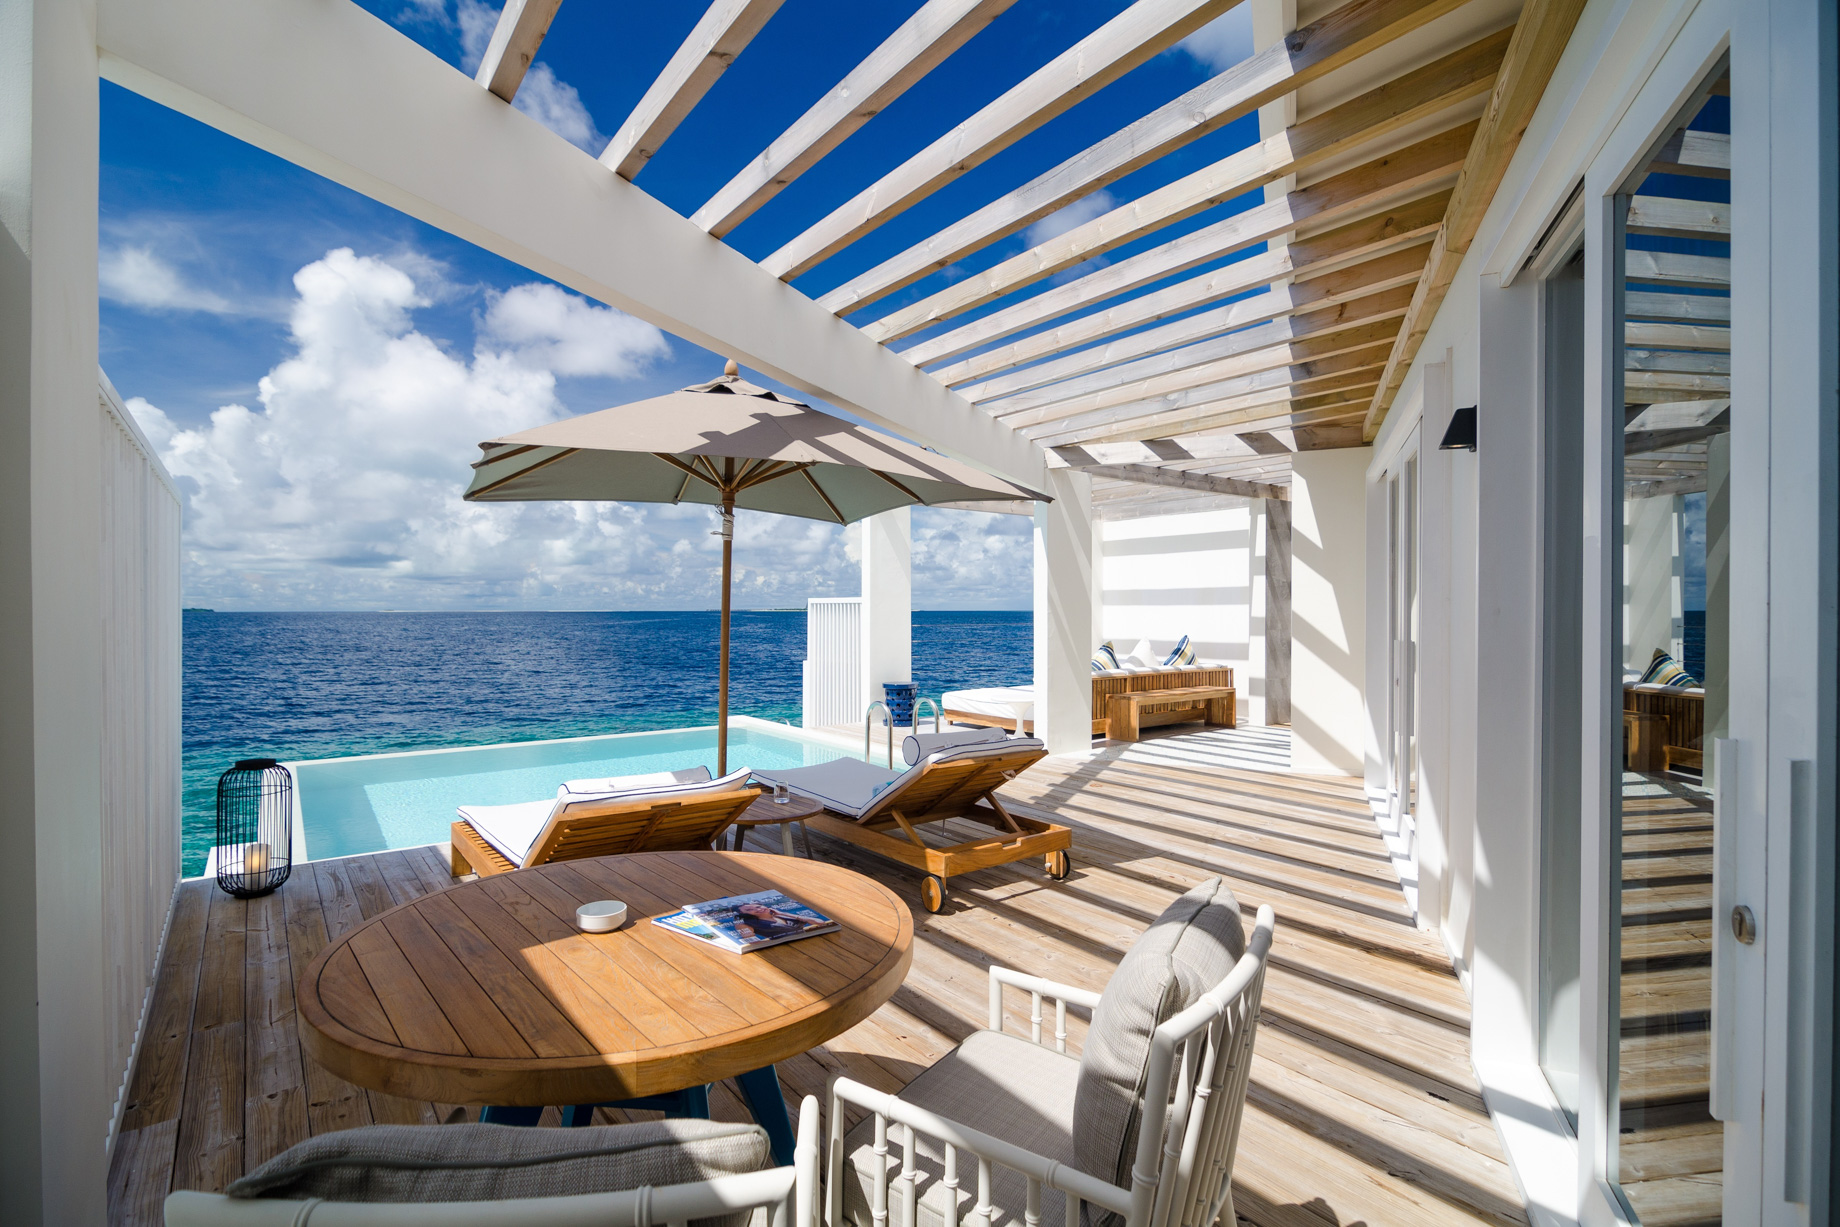 Amilla Fushi Resort and Residences - Baa Atoll, Maldives - Reef Water Villa Pool Deck